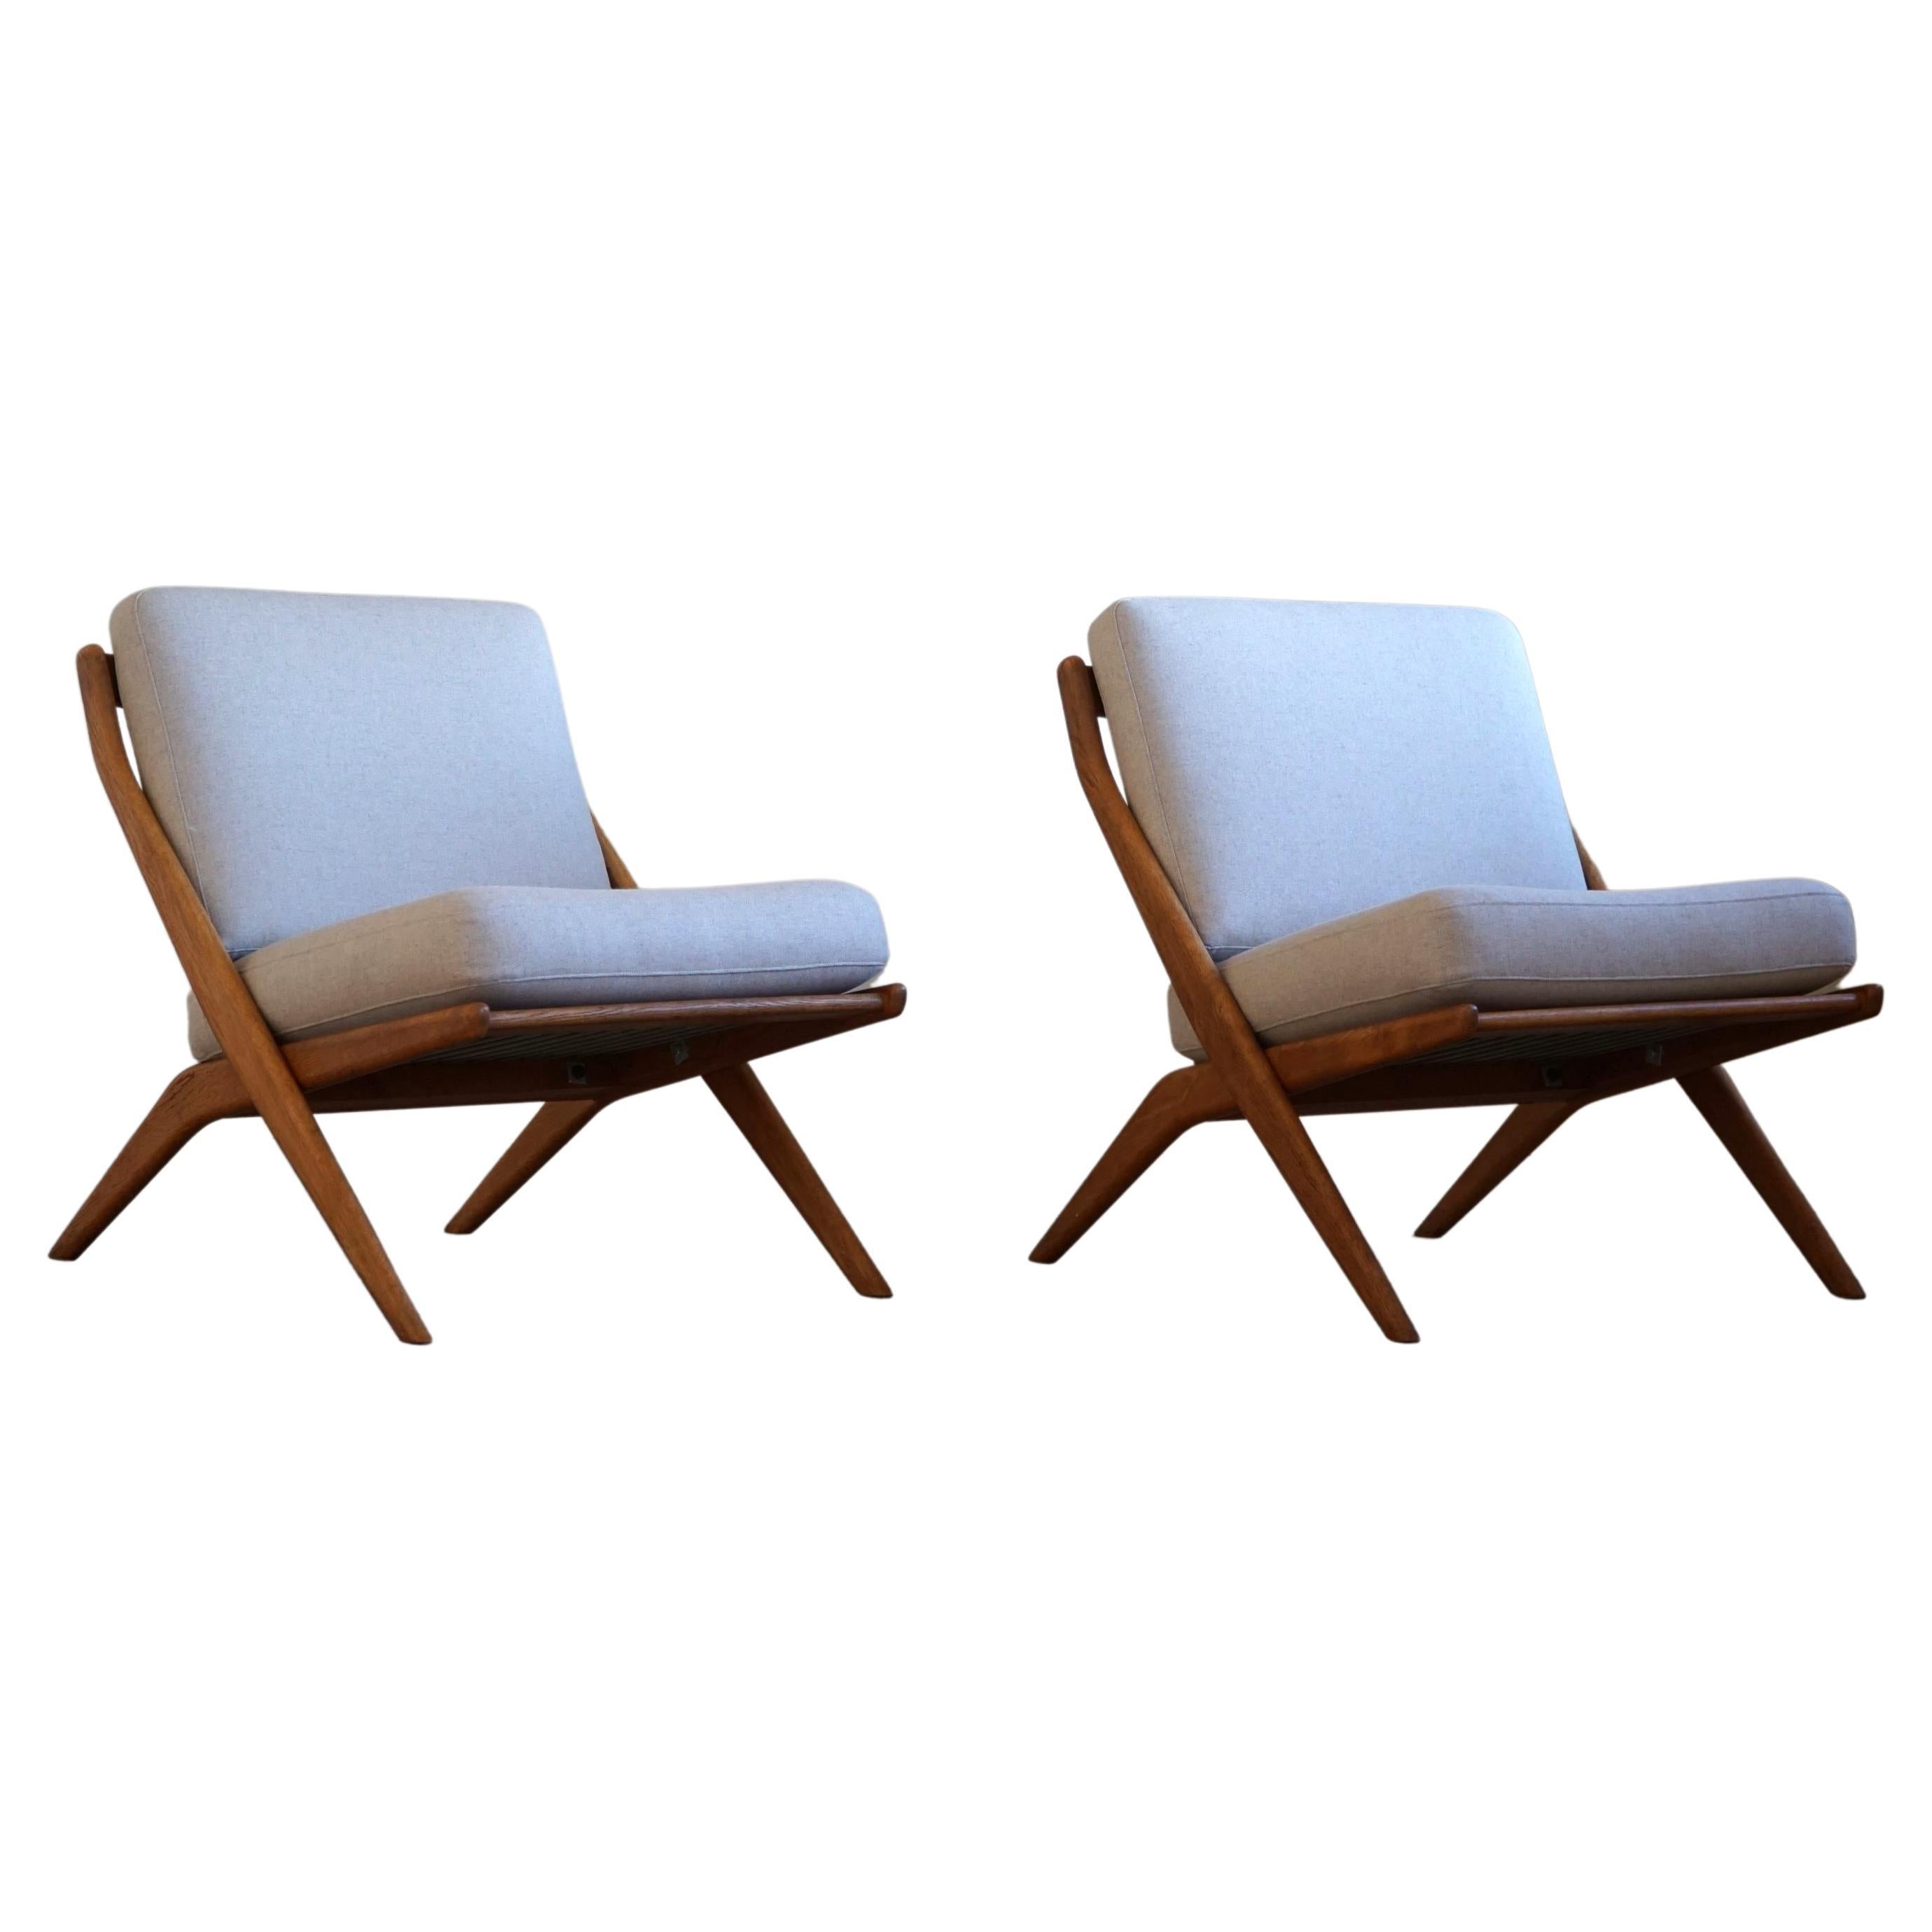 Folke Ohlsson. Paire de fauteuils de salon, modèle "Frisco/5-156", Bodafors, années 1960